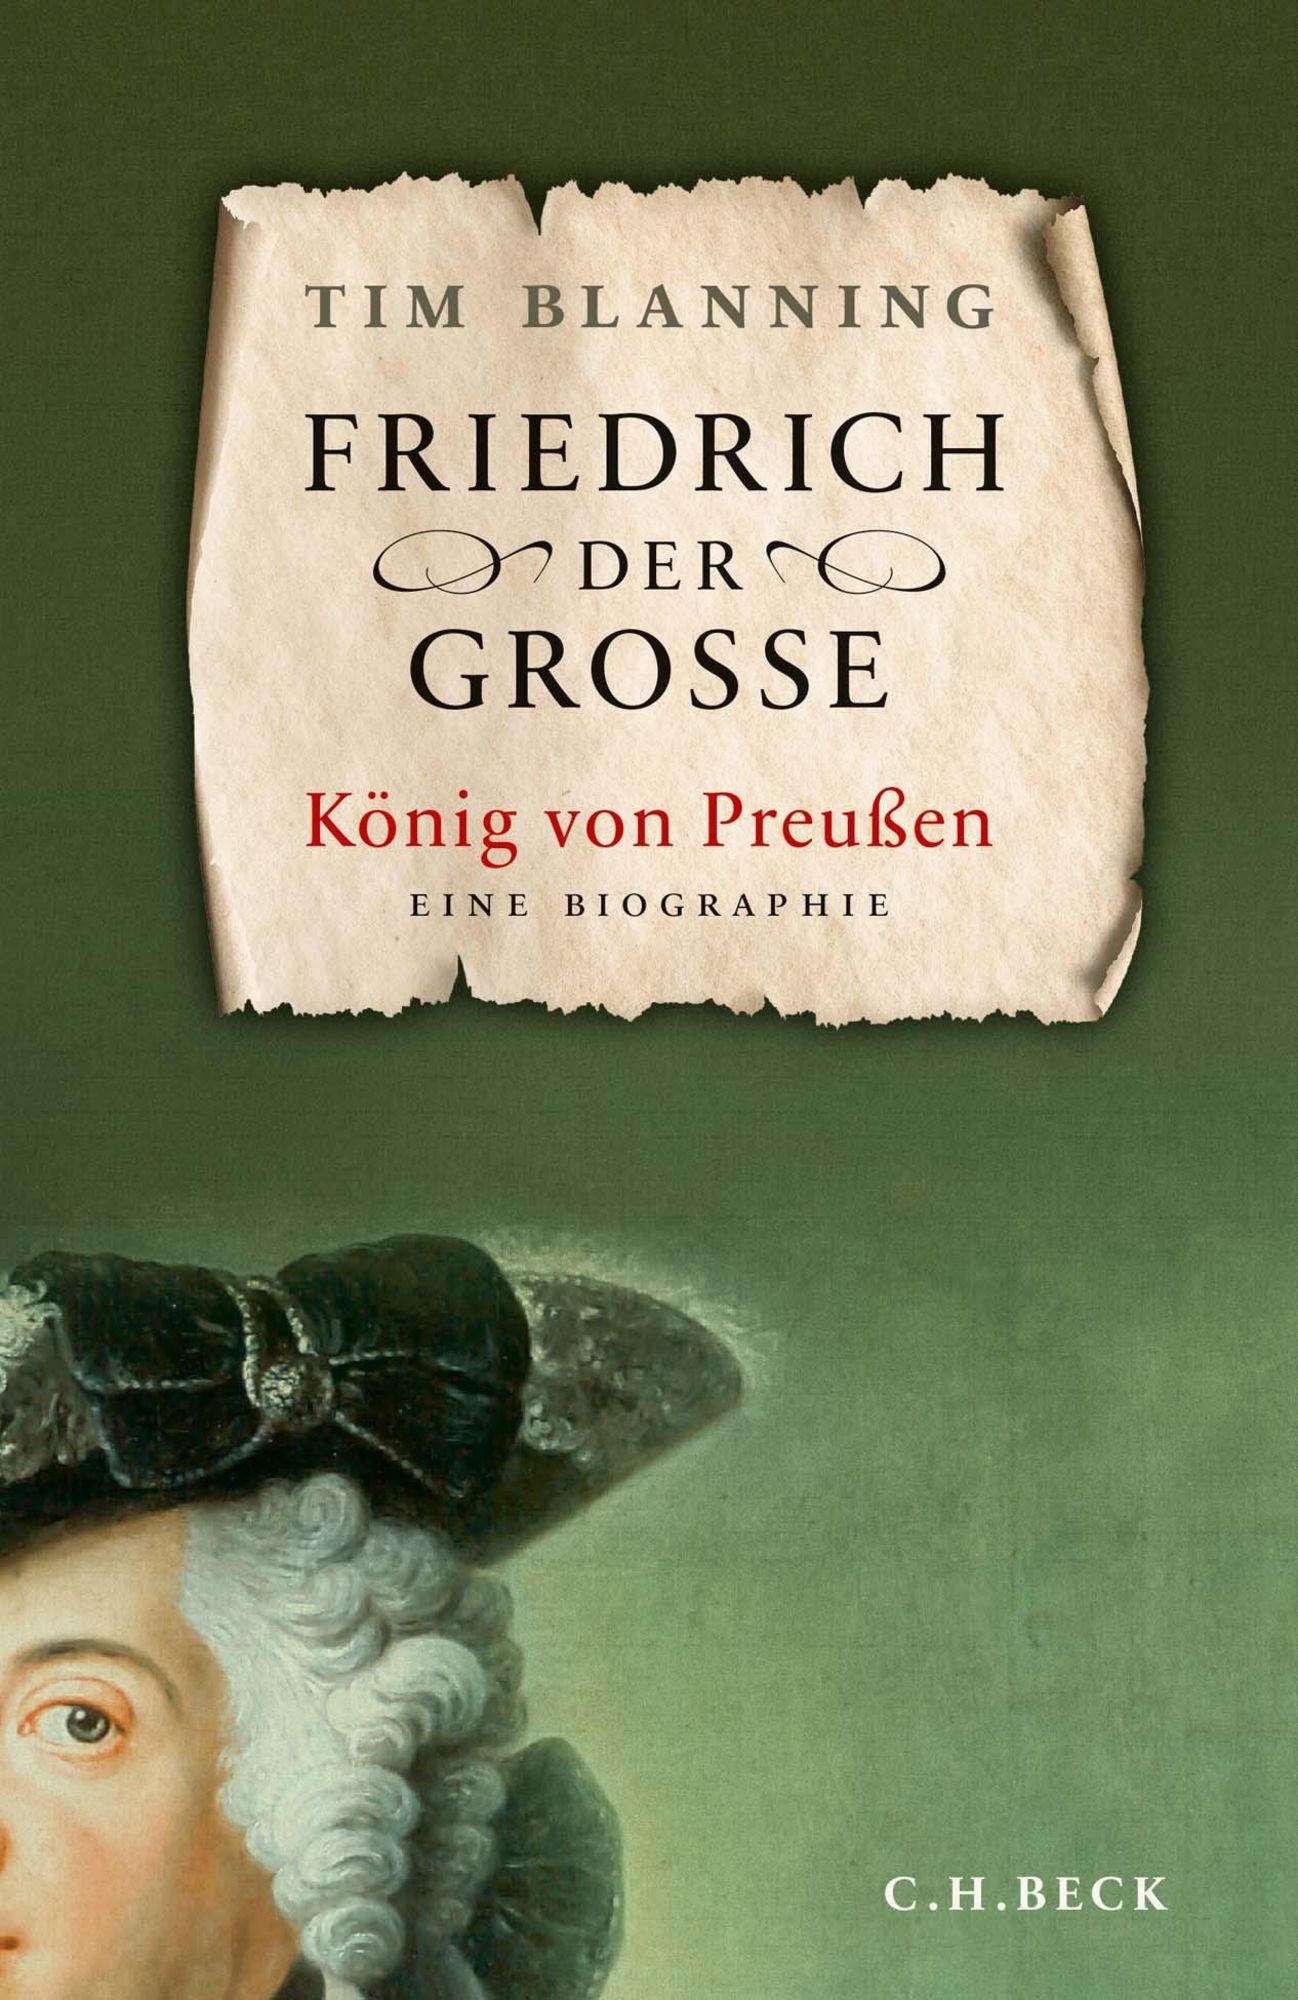 Friedrich der Große von Tim Blanning - Buch |